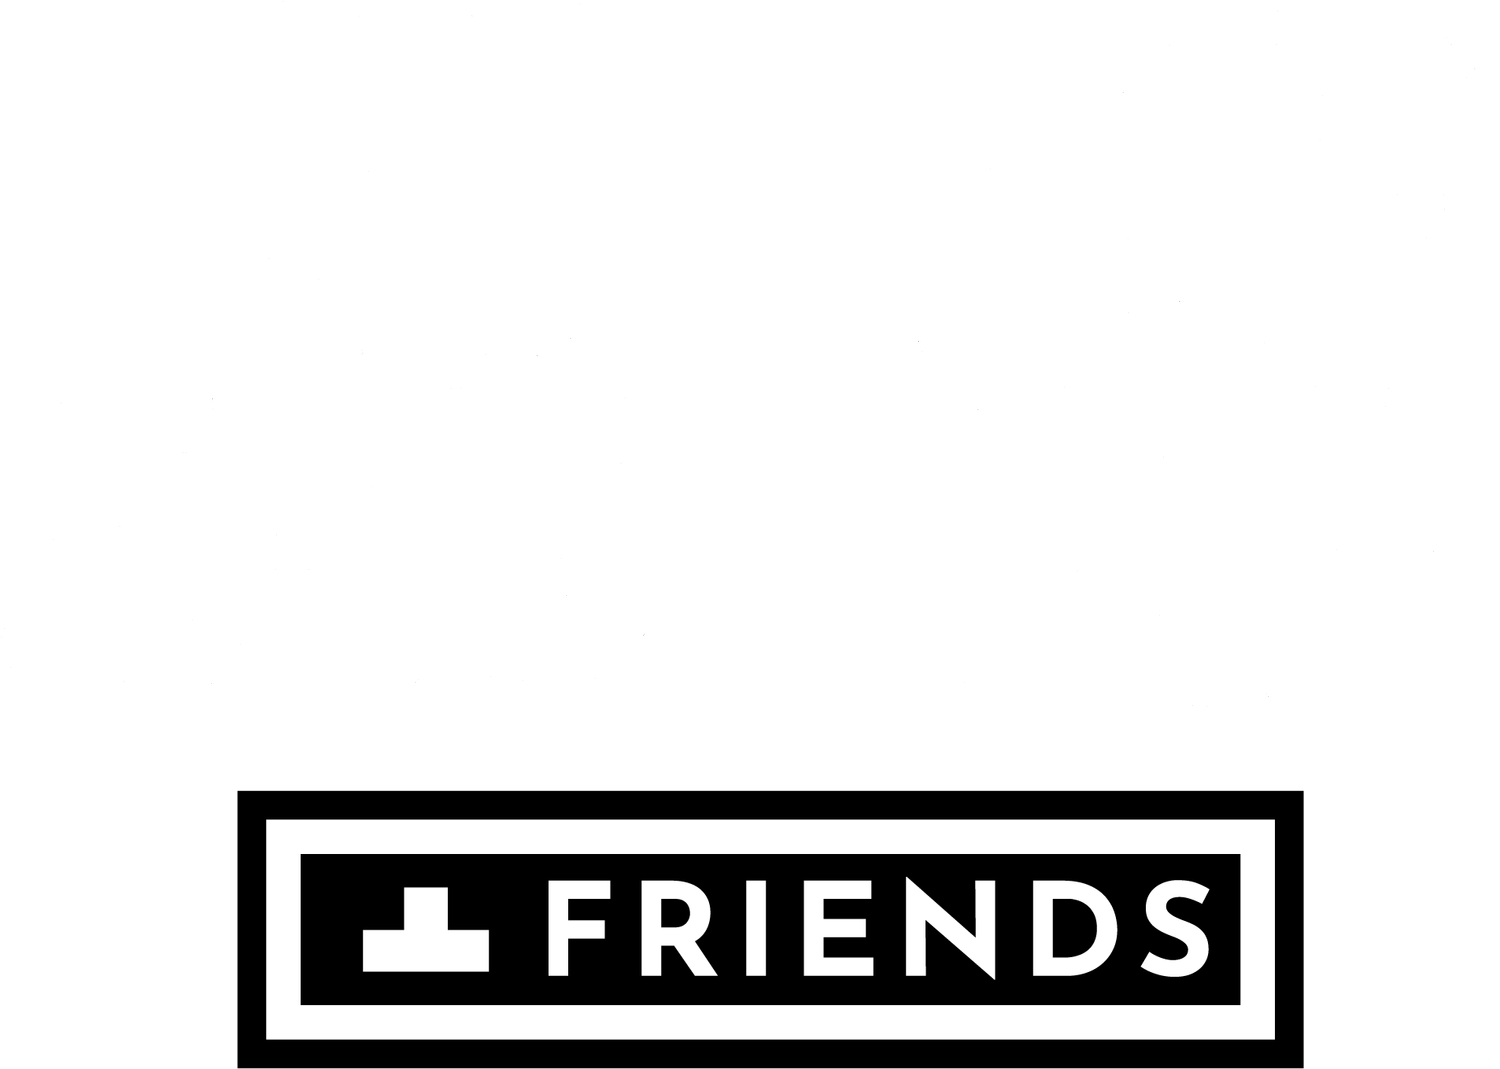 Shakespeare + Friends